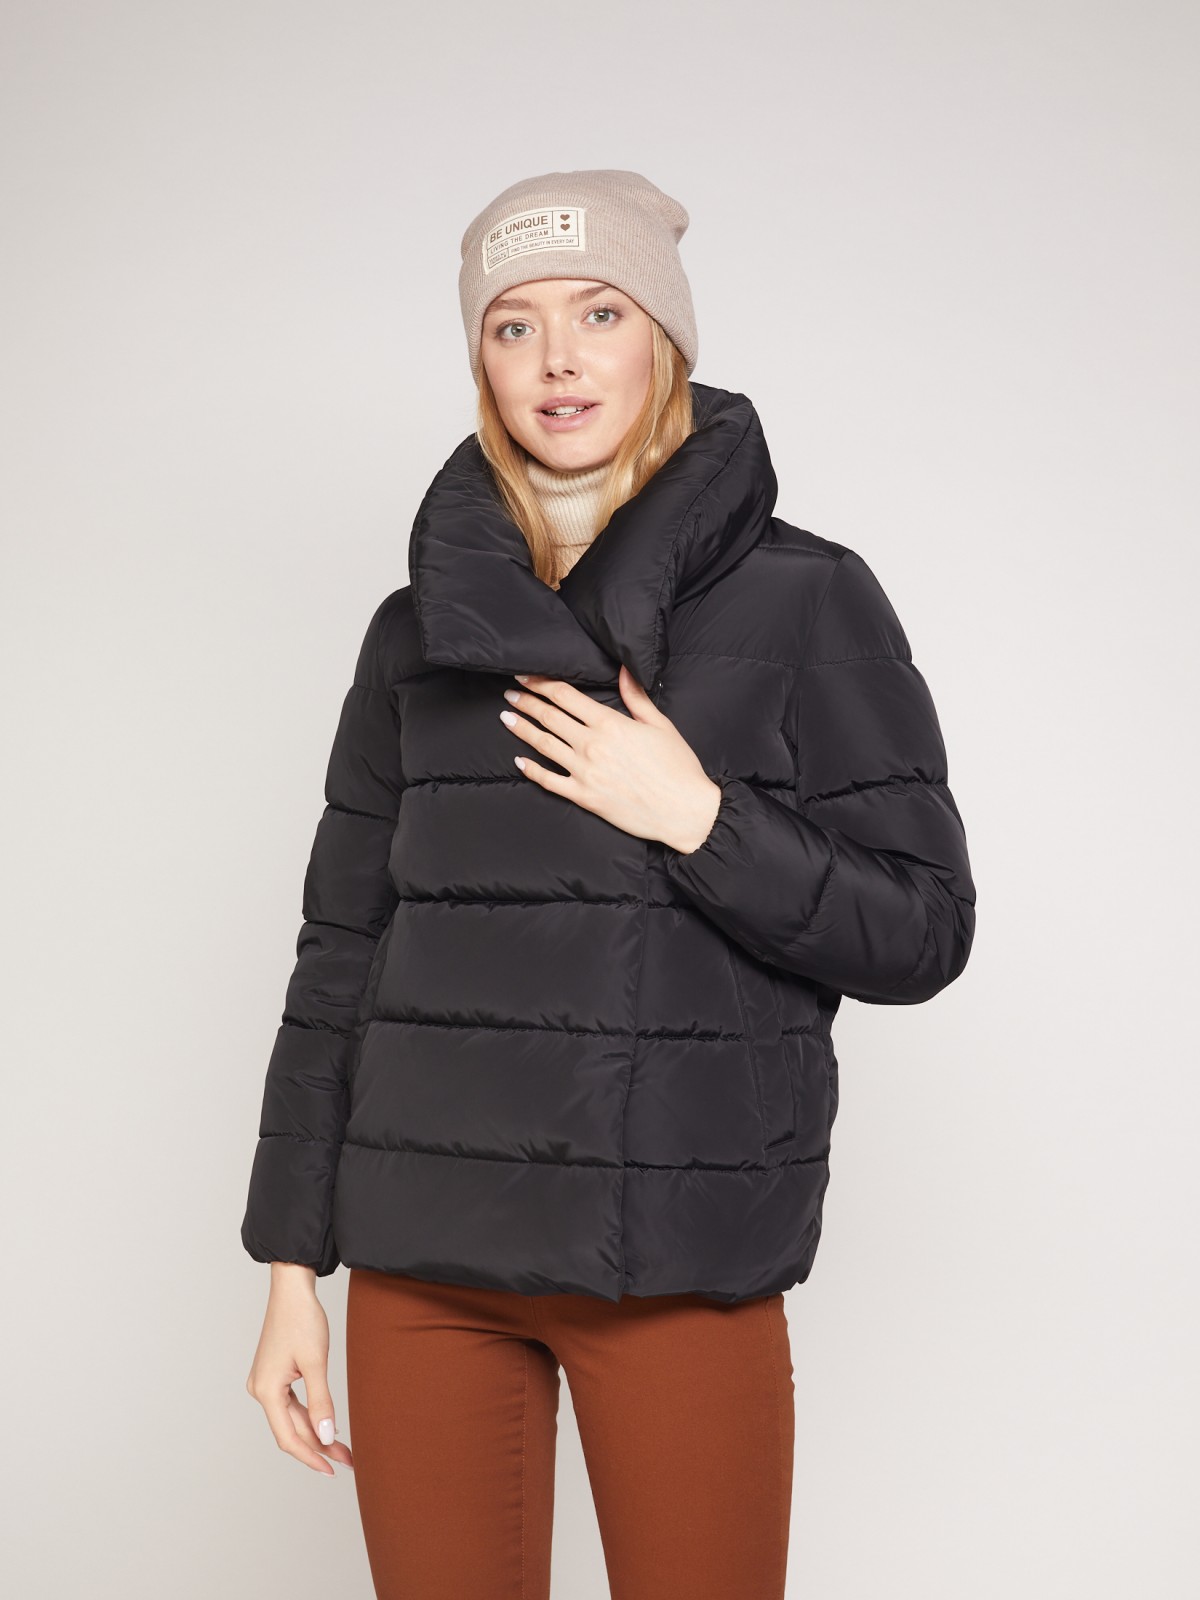 Тёплая куртка с высоким воротником-стойкой zolla 021335102054, цвет черный, размер XS - фото 2